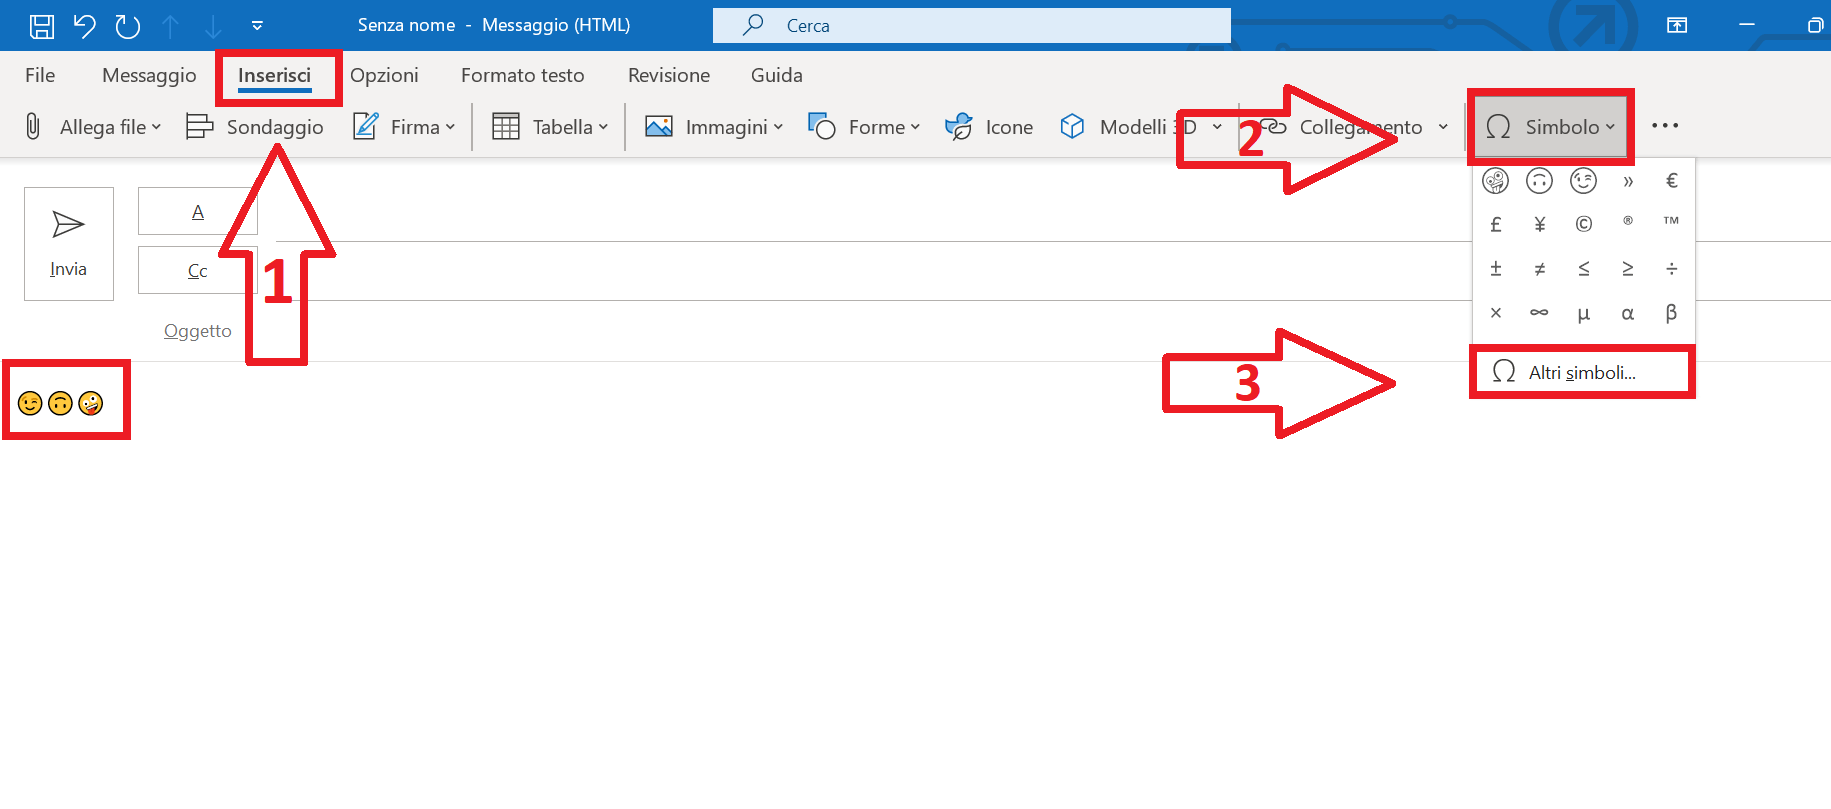 Screenshot dell’opzione “Simbolo” nel menu “Inserisci” di Outlook 2021